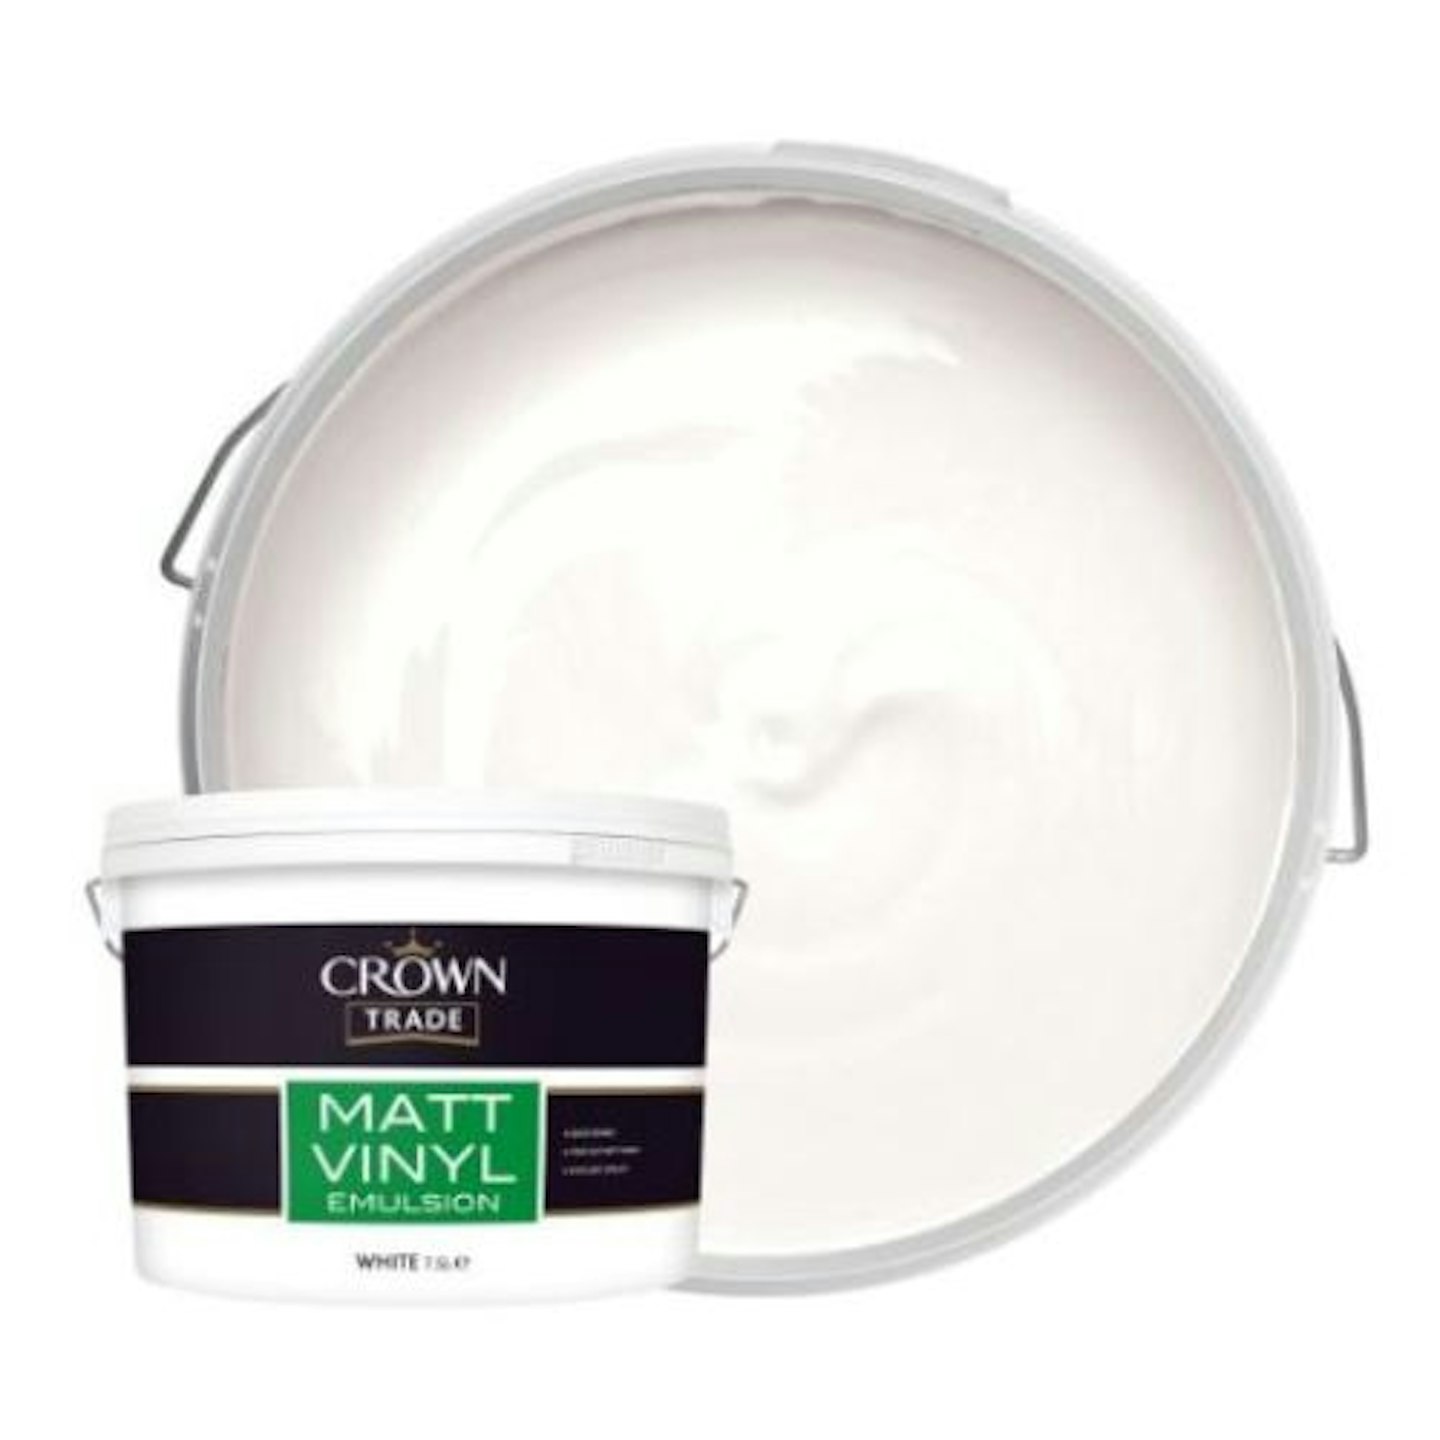 Crown Trade Vinyl Emulsion Paint - White